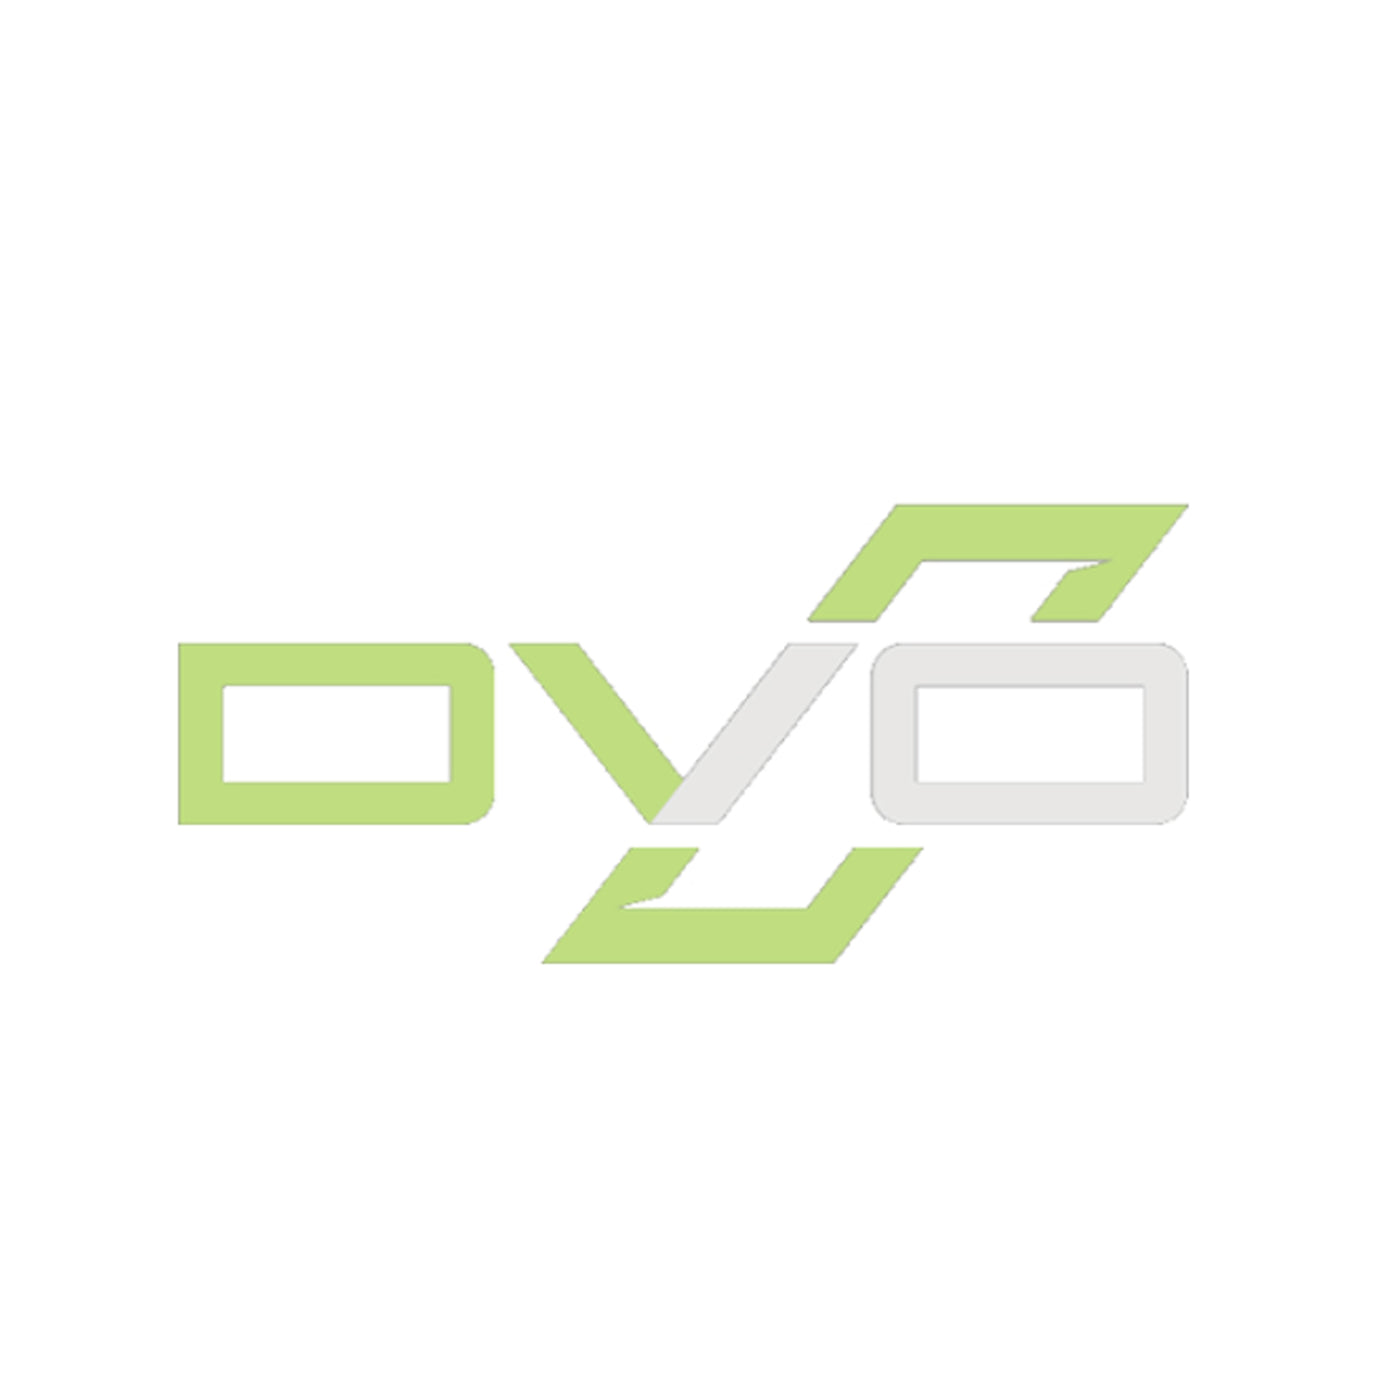 DVO Jade factory parts